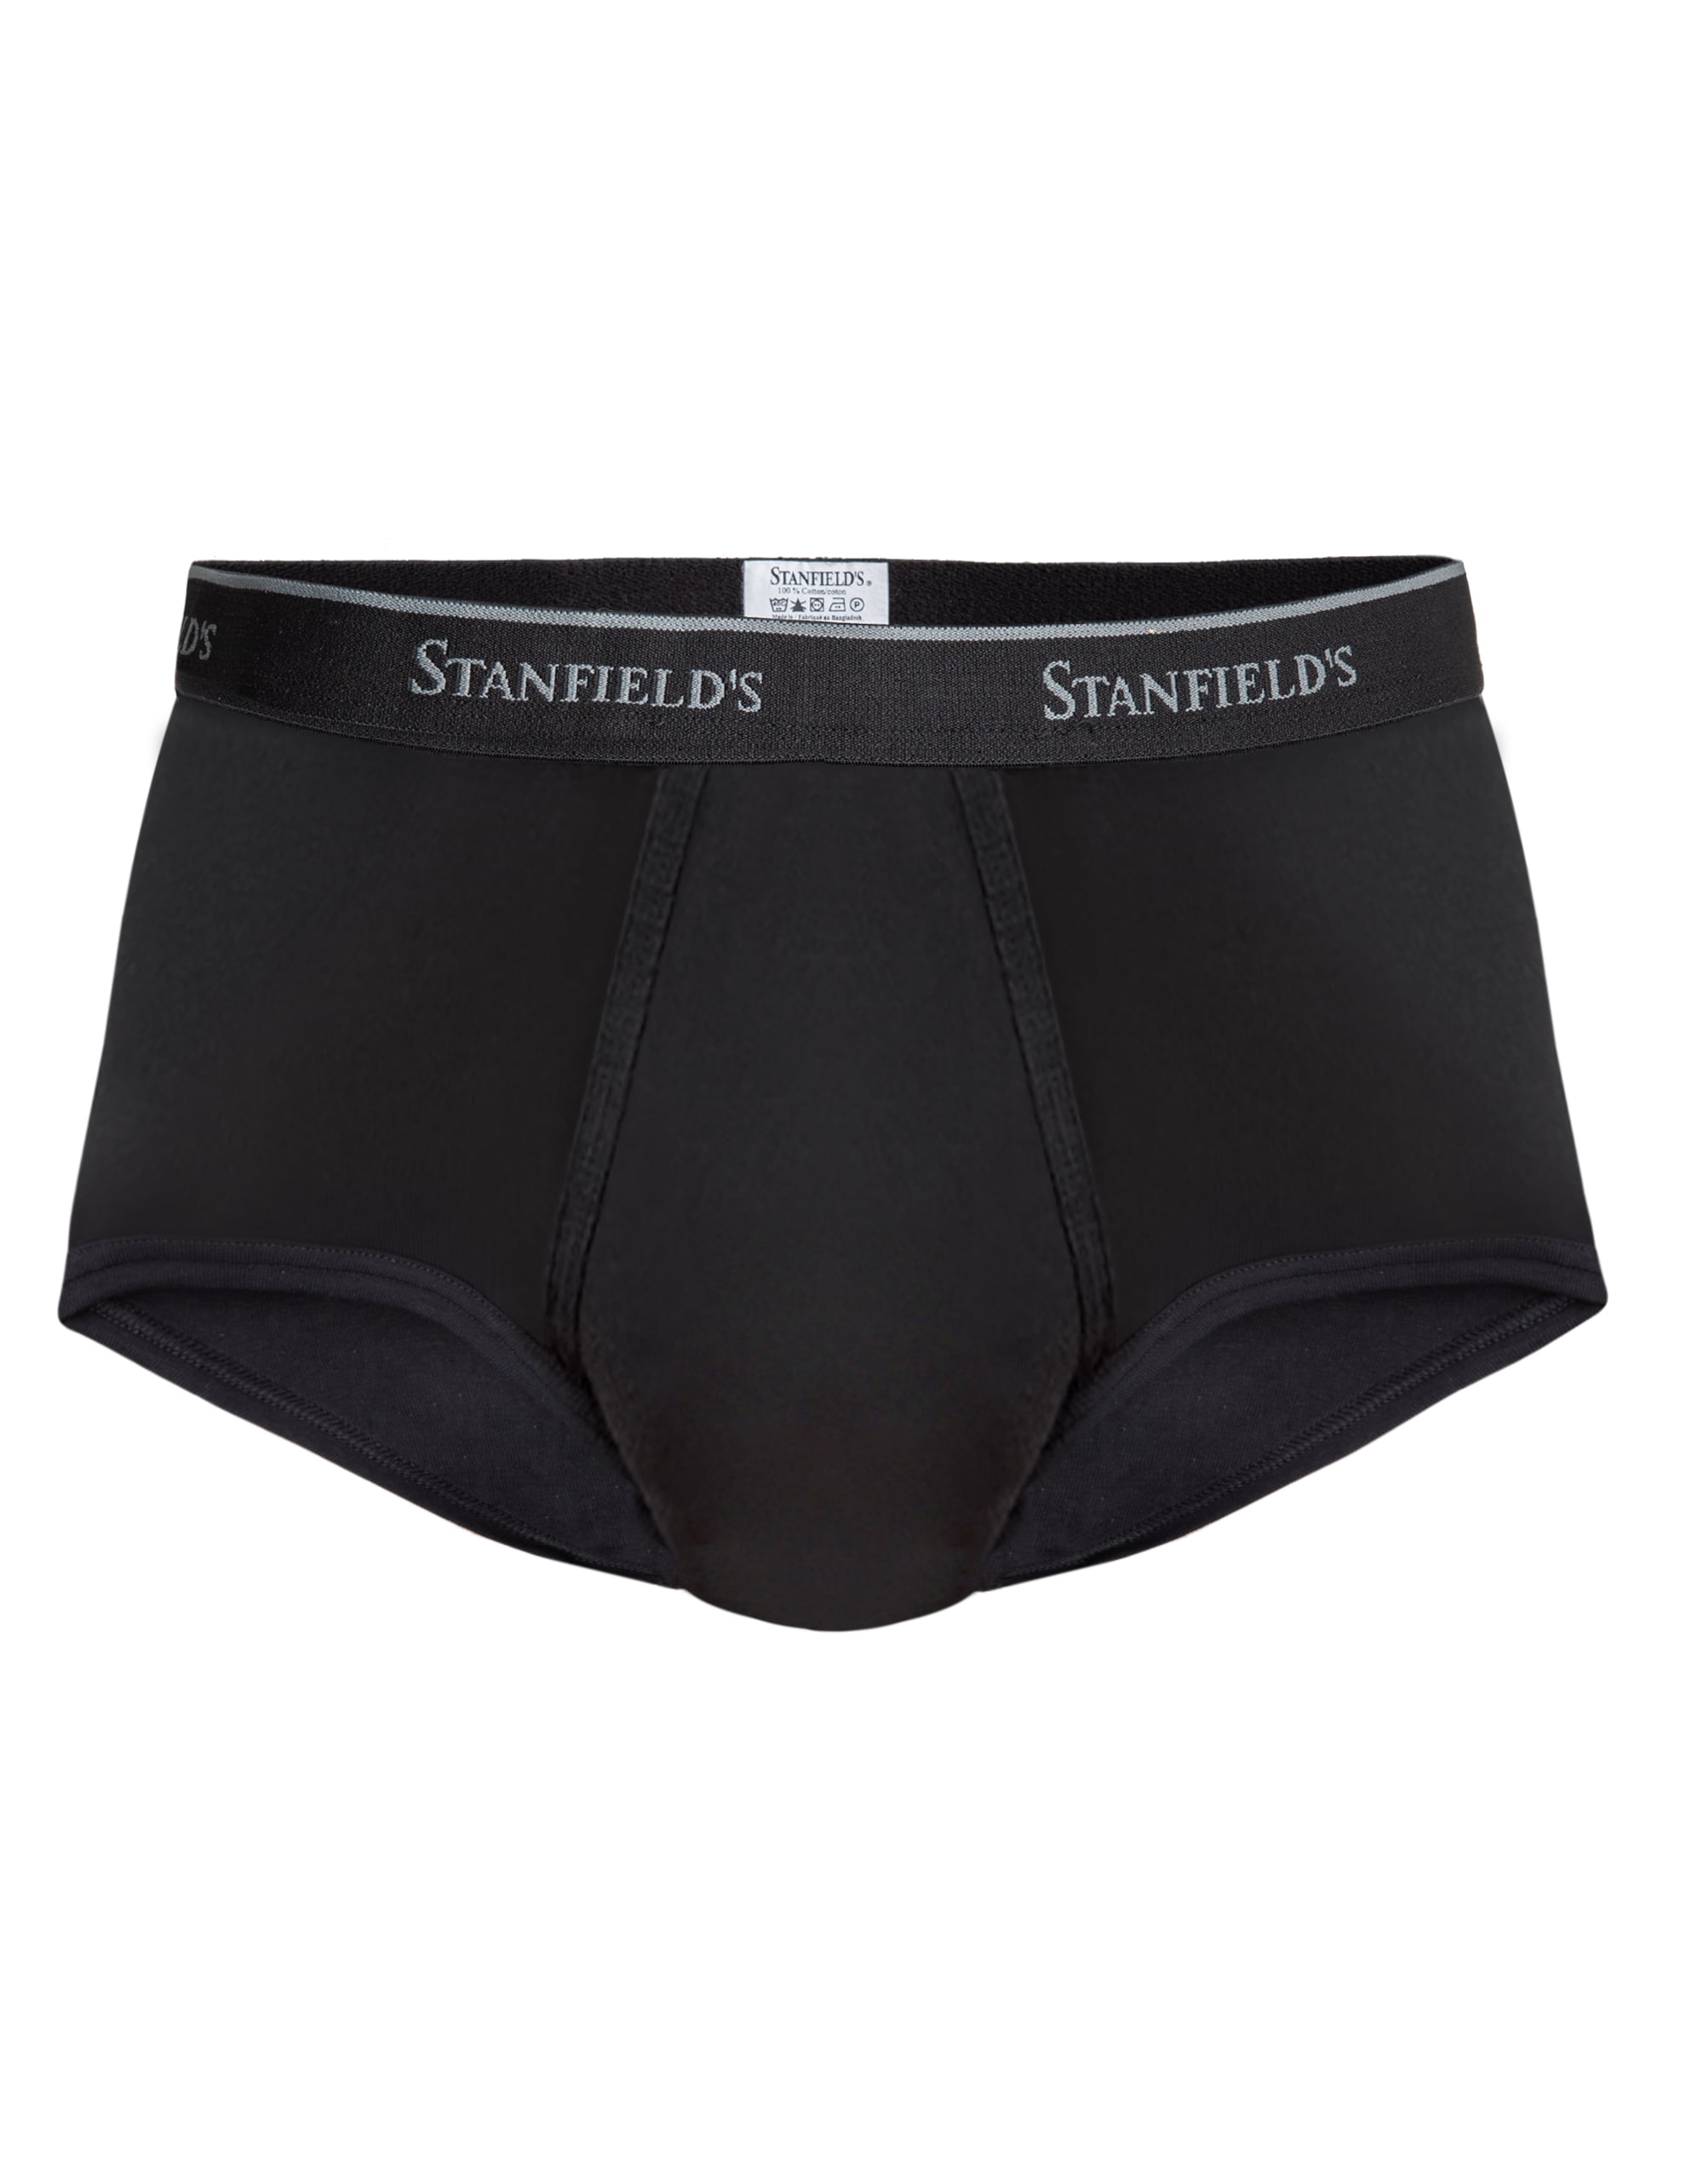 Vintage Stanfield's Underwear - Men's x-Large Size White Briefs